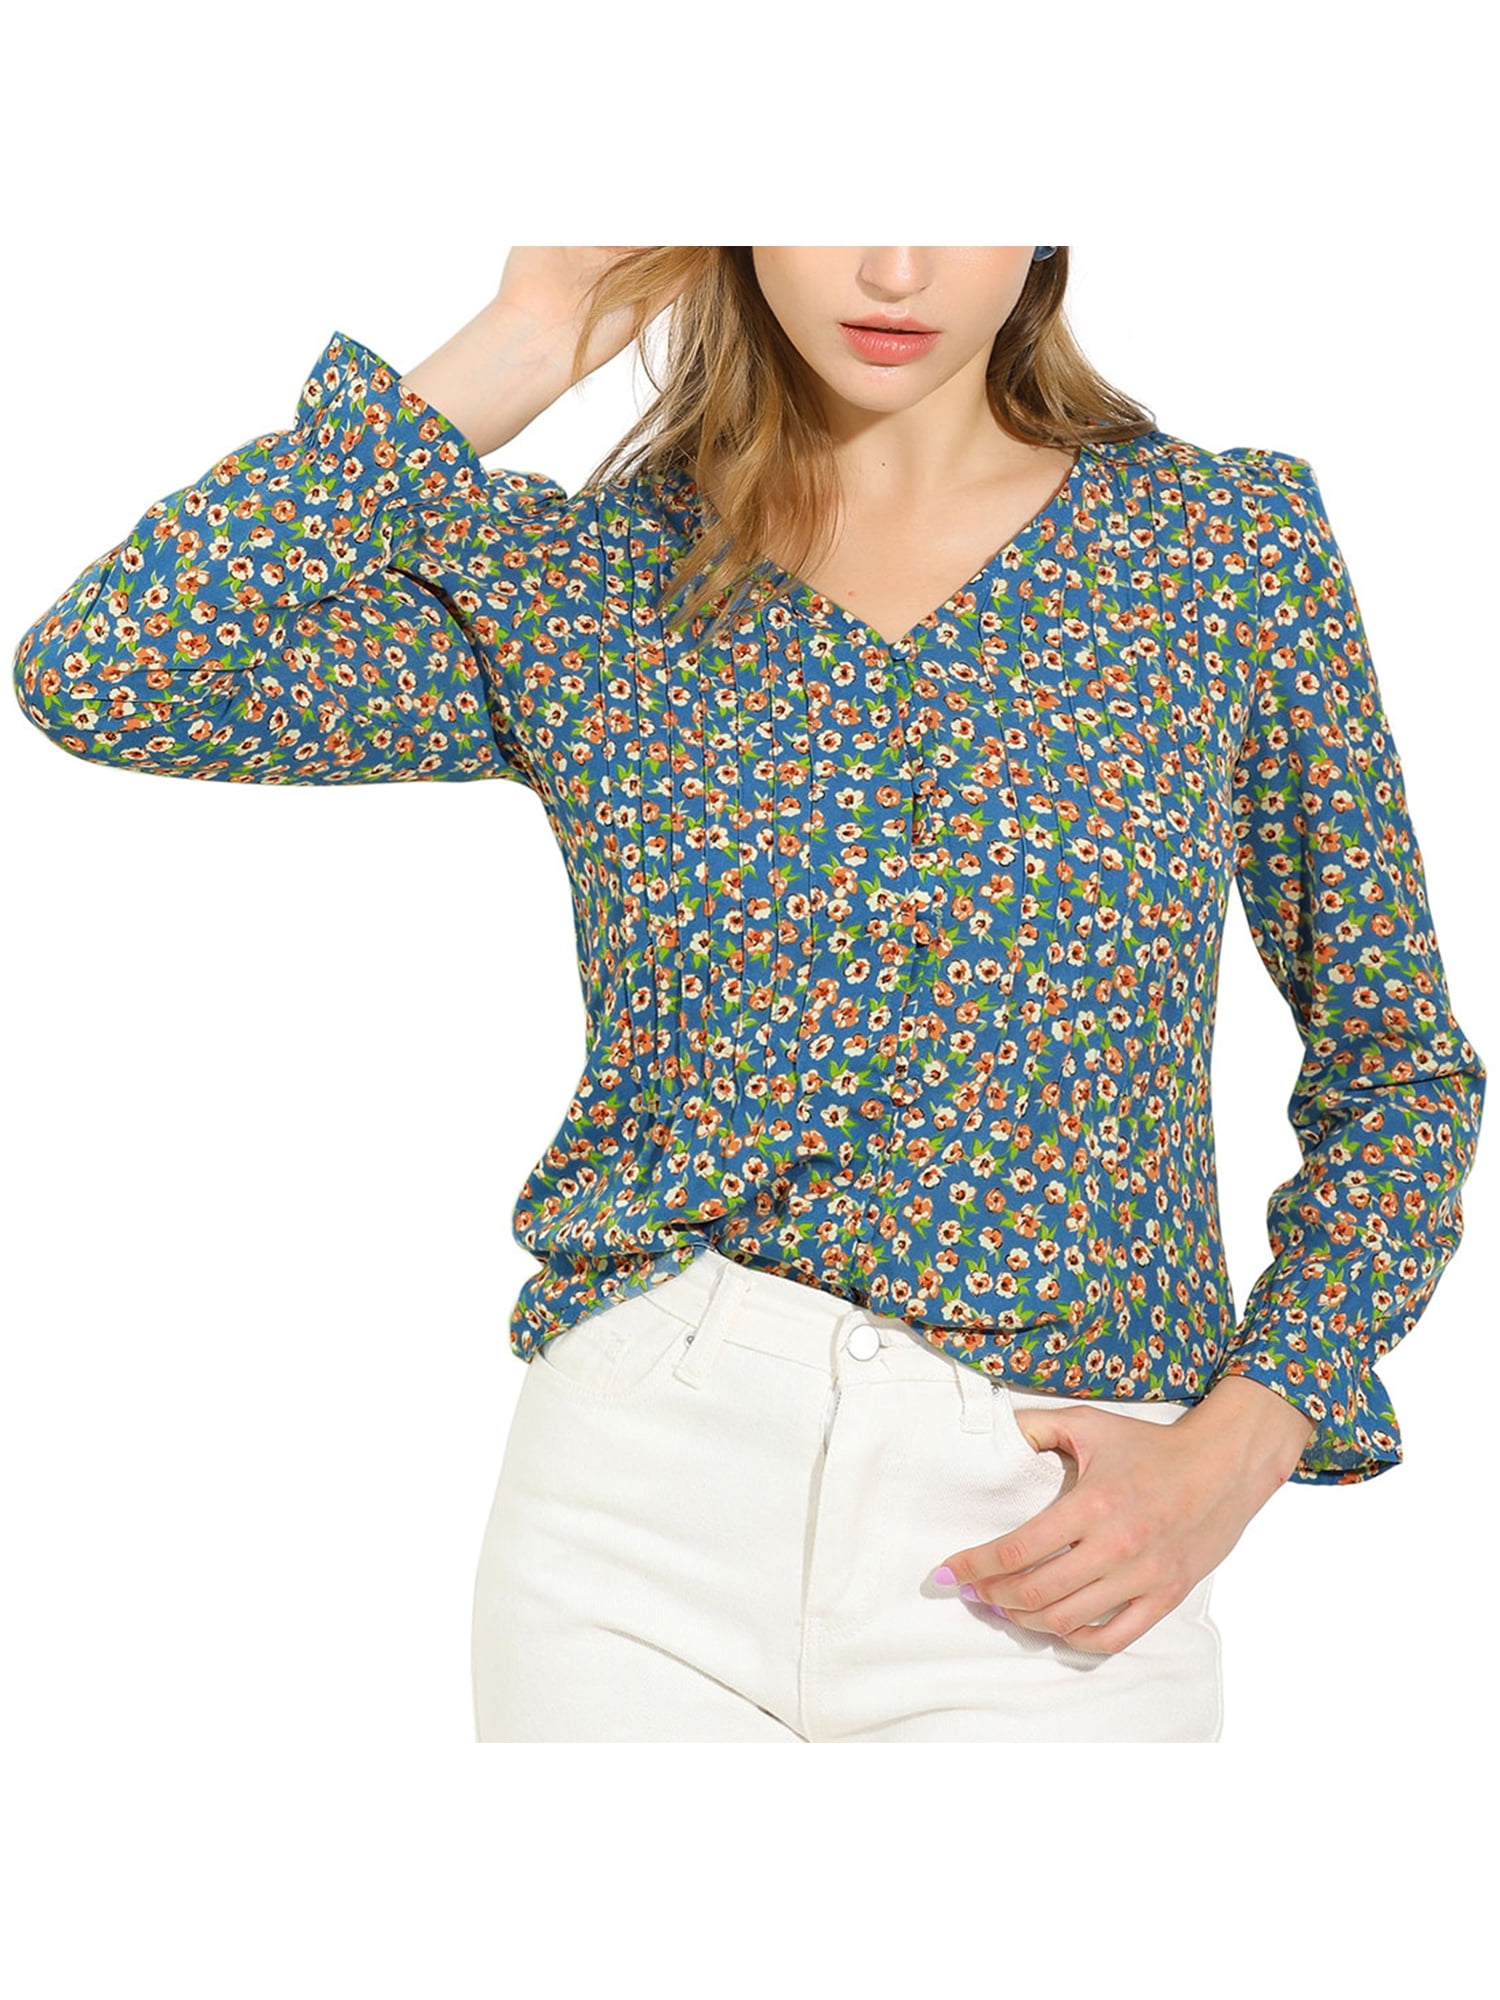 UK Summer Womens Floral Caftan V-neck Cold Shoulder Top T Shirt Blouse Size 8-26 